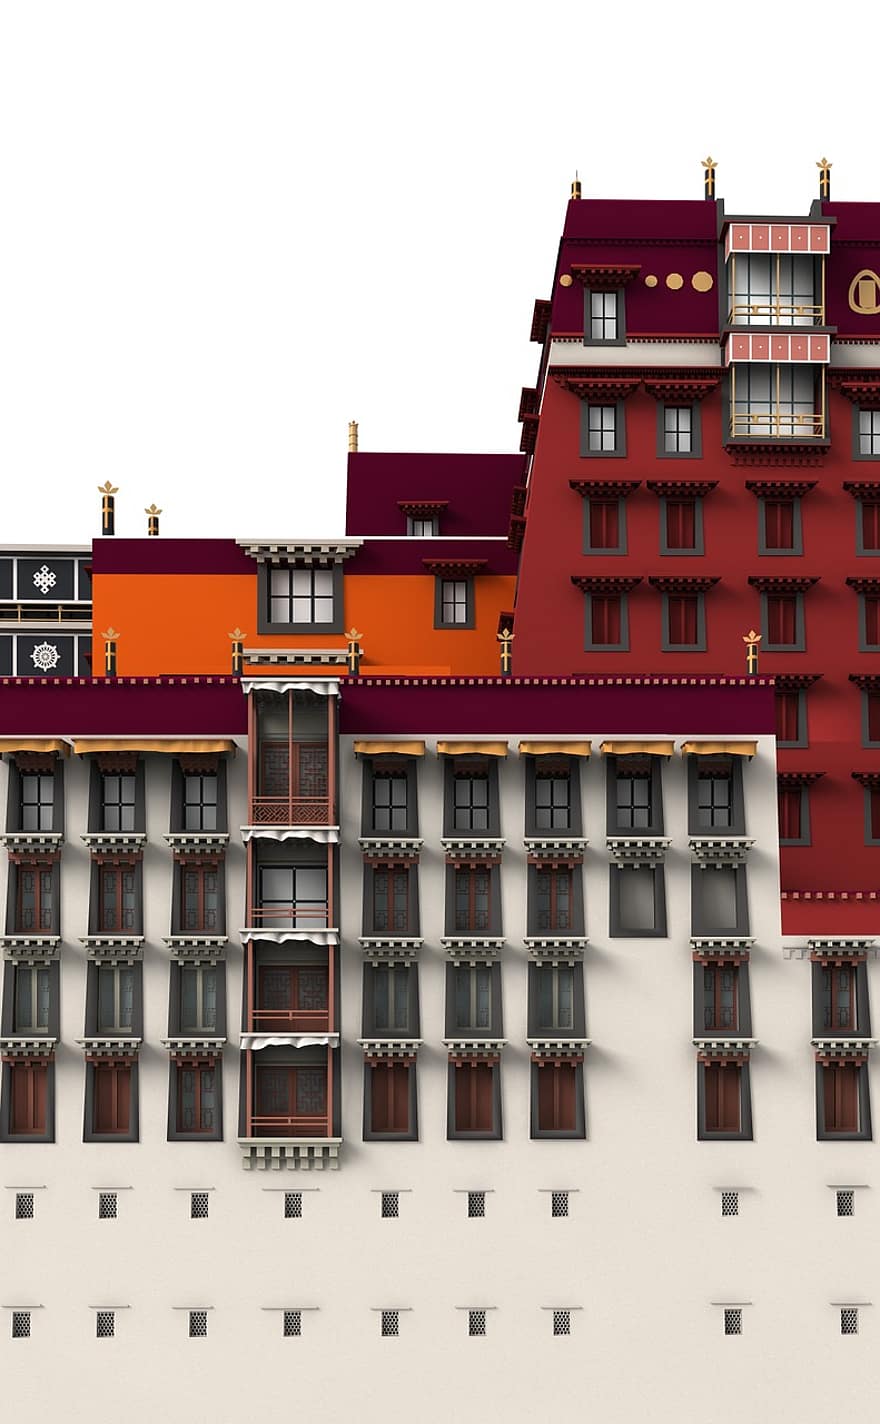 potala, palác, Lhasa, architektura, budova, kostel, Zajímavosti, historicky, turistů, atrakce, mezník